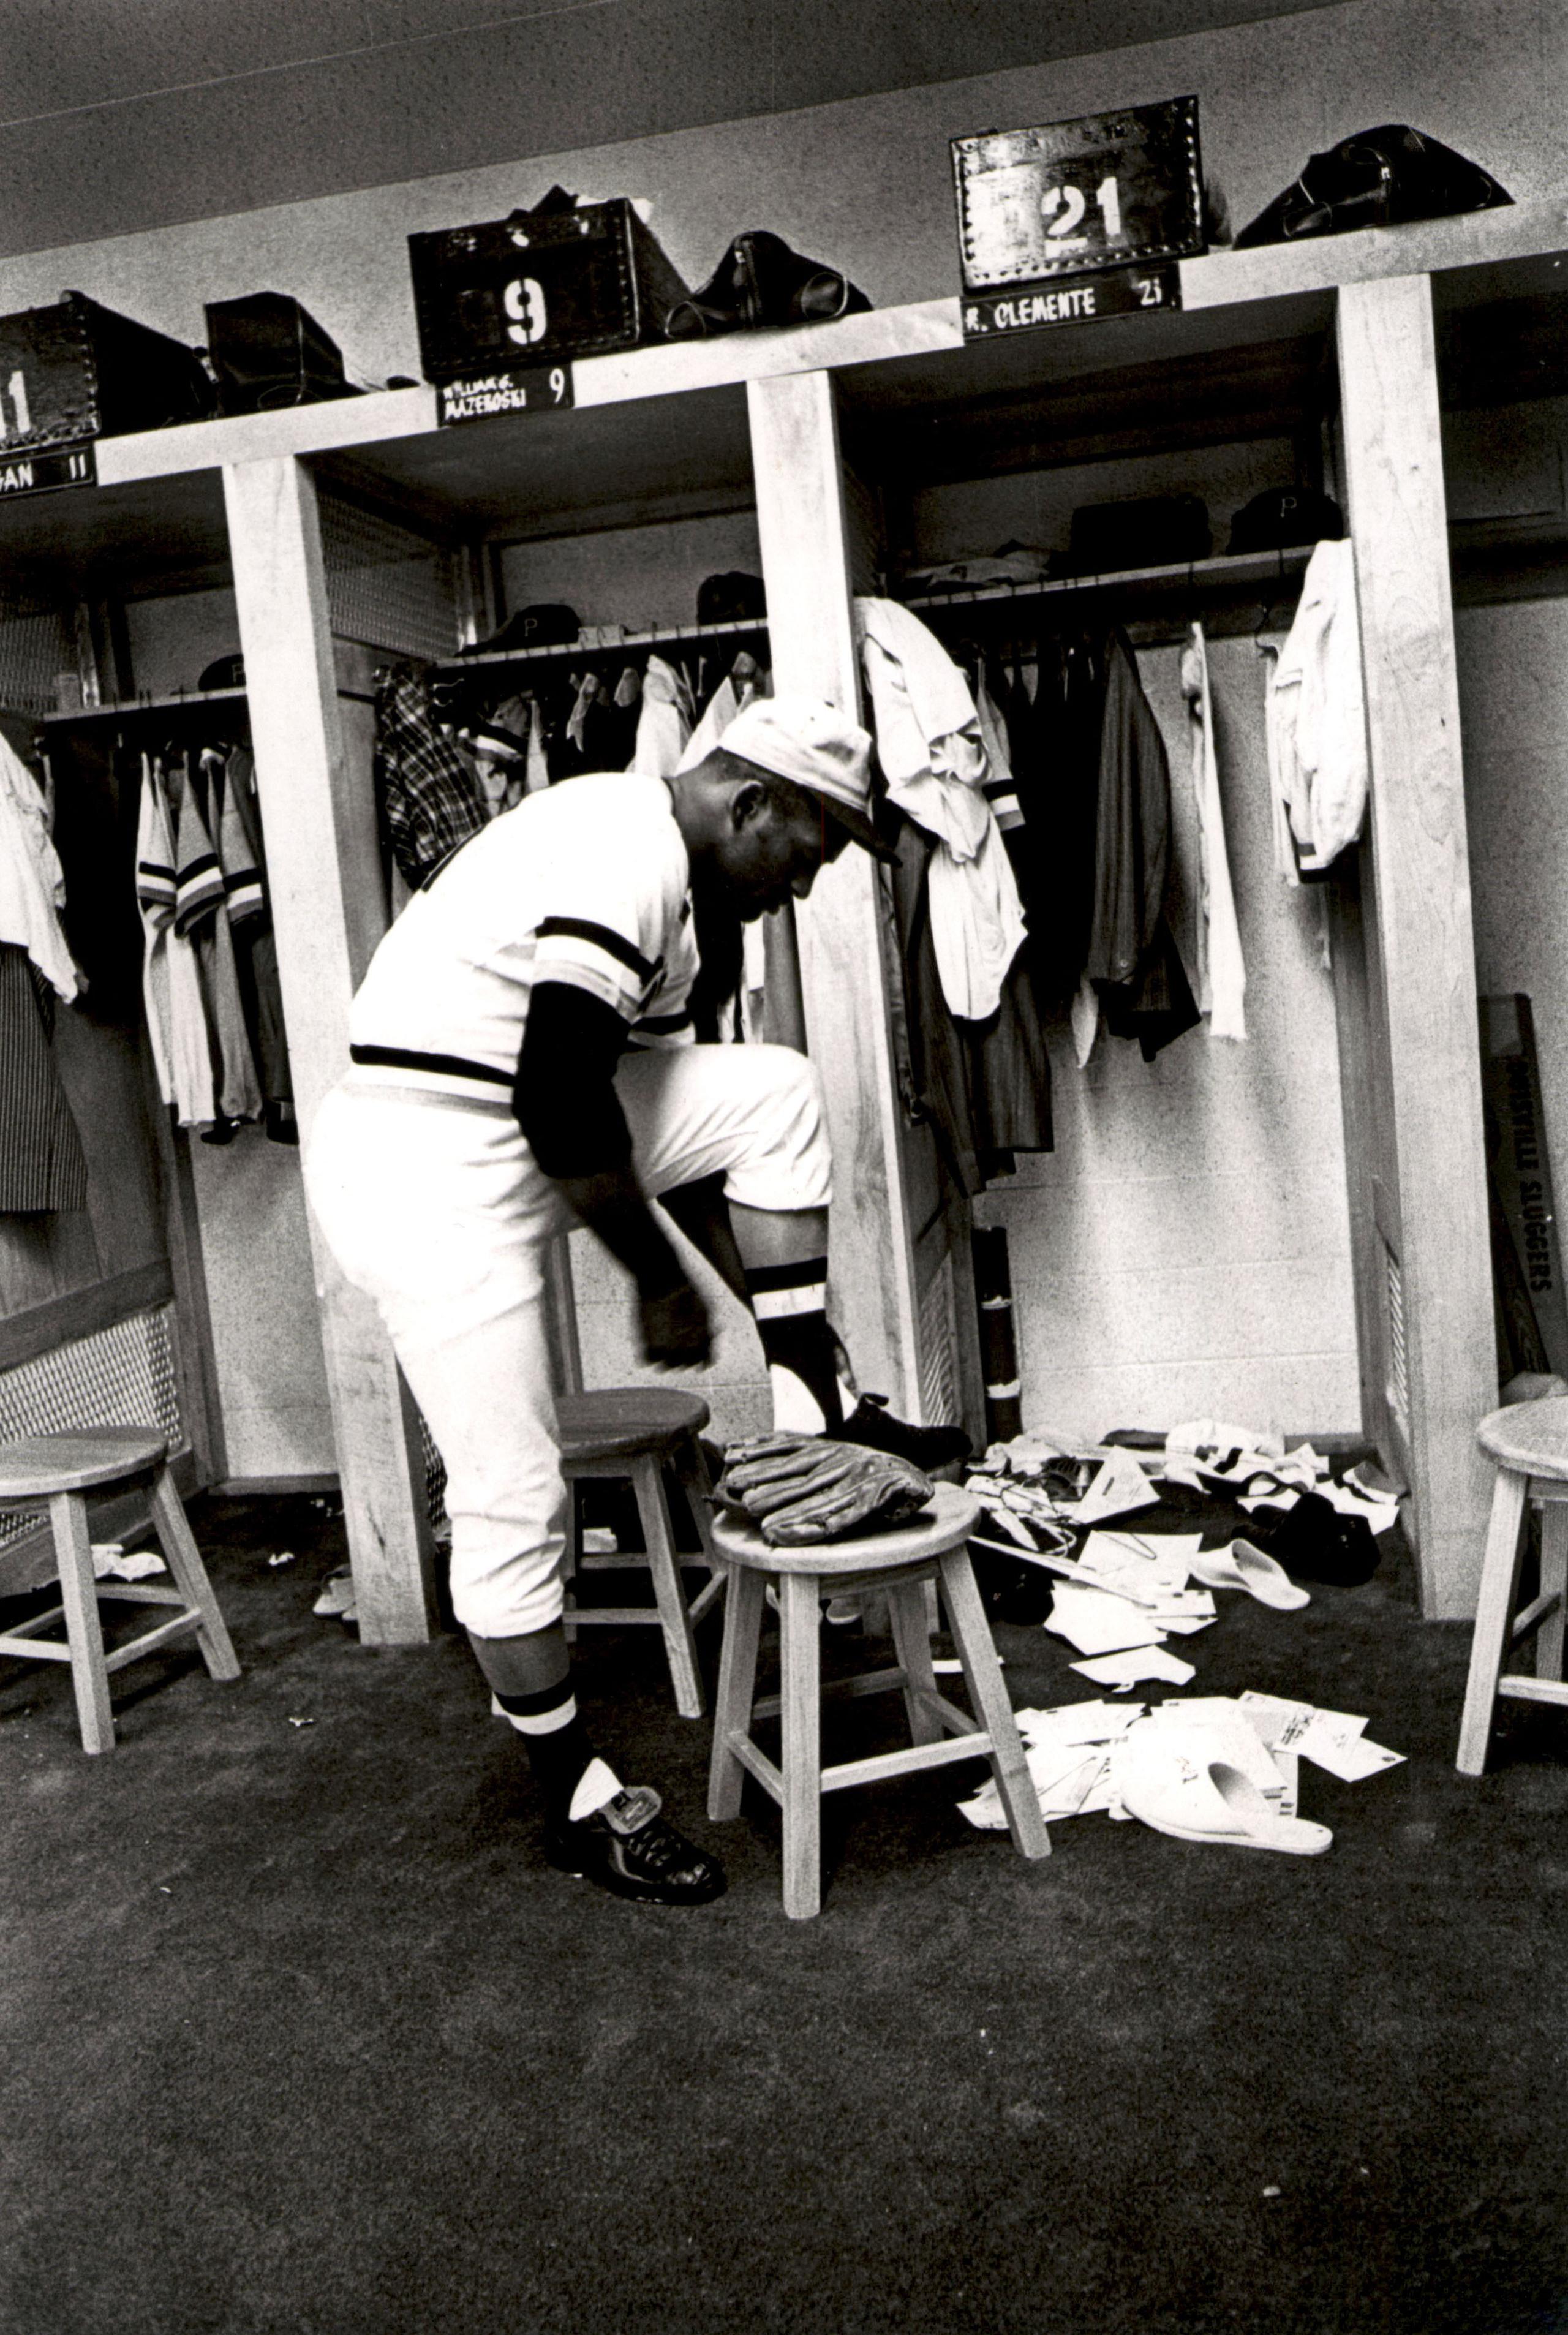 Roberto Clemente jugó toda su carrera en las Mayores con los Pirates. Sin embargo, su firma original fue con los Dodgers de Brooklyn, quienes retrasaron su llegada a las Grandes Ligas, lo que les hizo perder al pelotero cuando fue reclamado por Pittsburgh vía la Regla 5. Así recibió la oportunidad de jugar todos los días y desarrollar su juego, algo que tal vez no hubiera sucedido con los Dodgers.